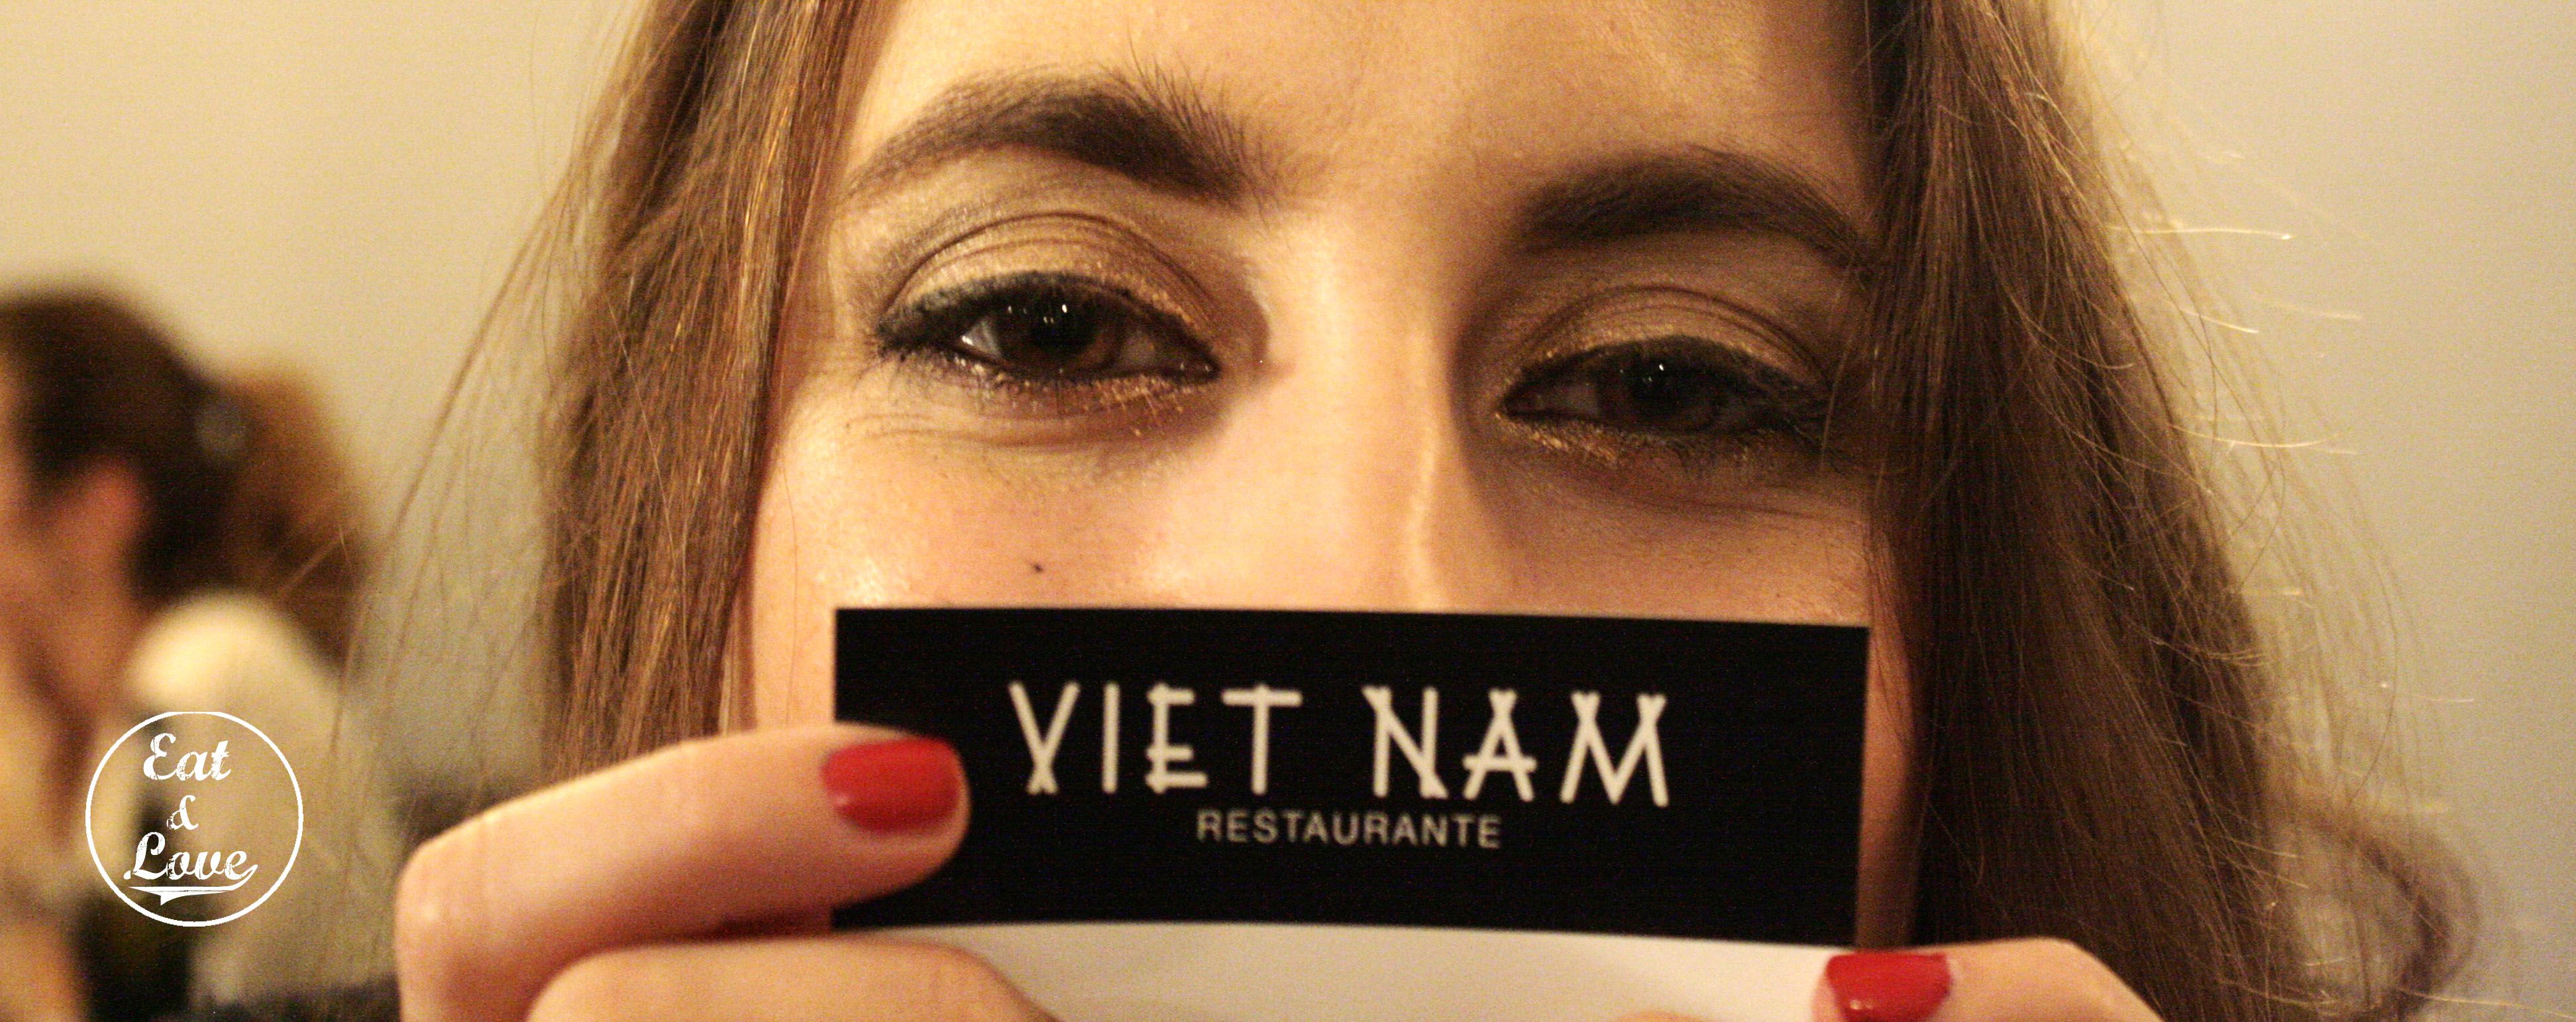 Tarjeta restaurante Vietnam - Madrid